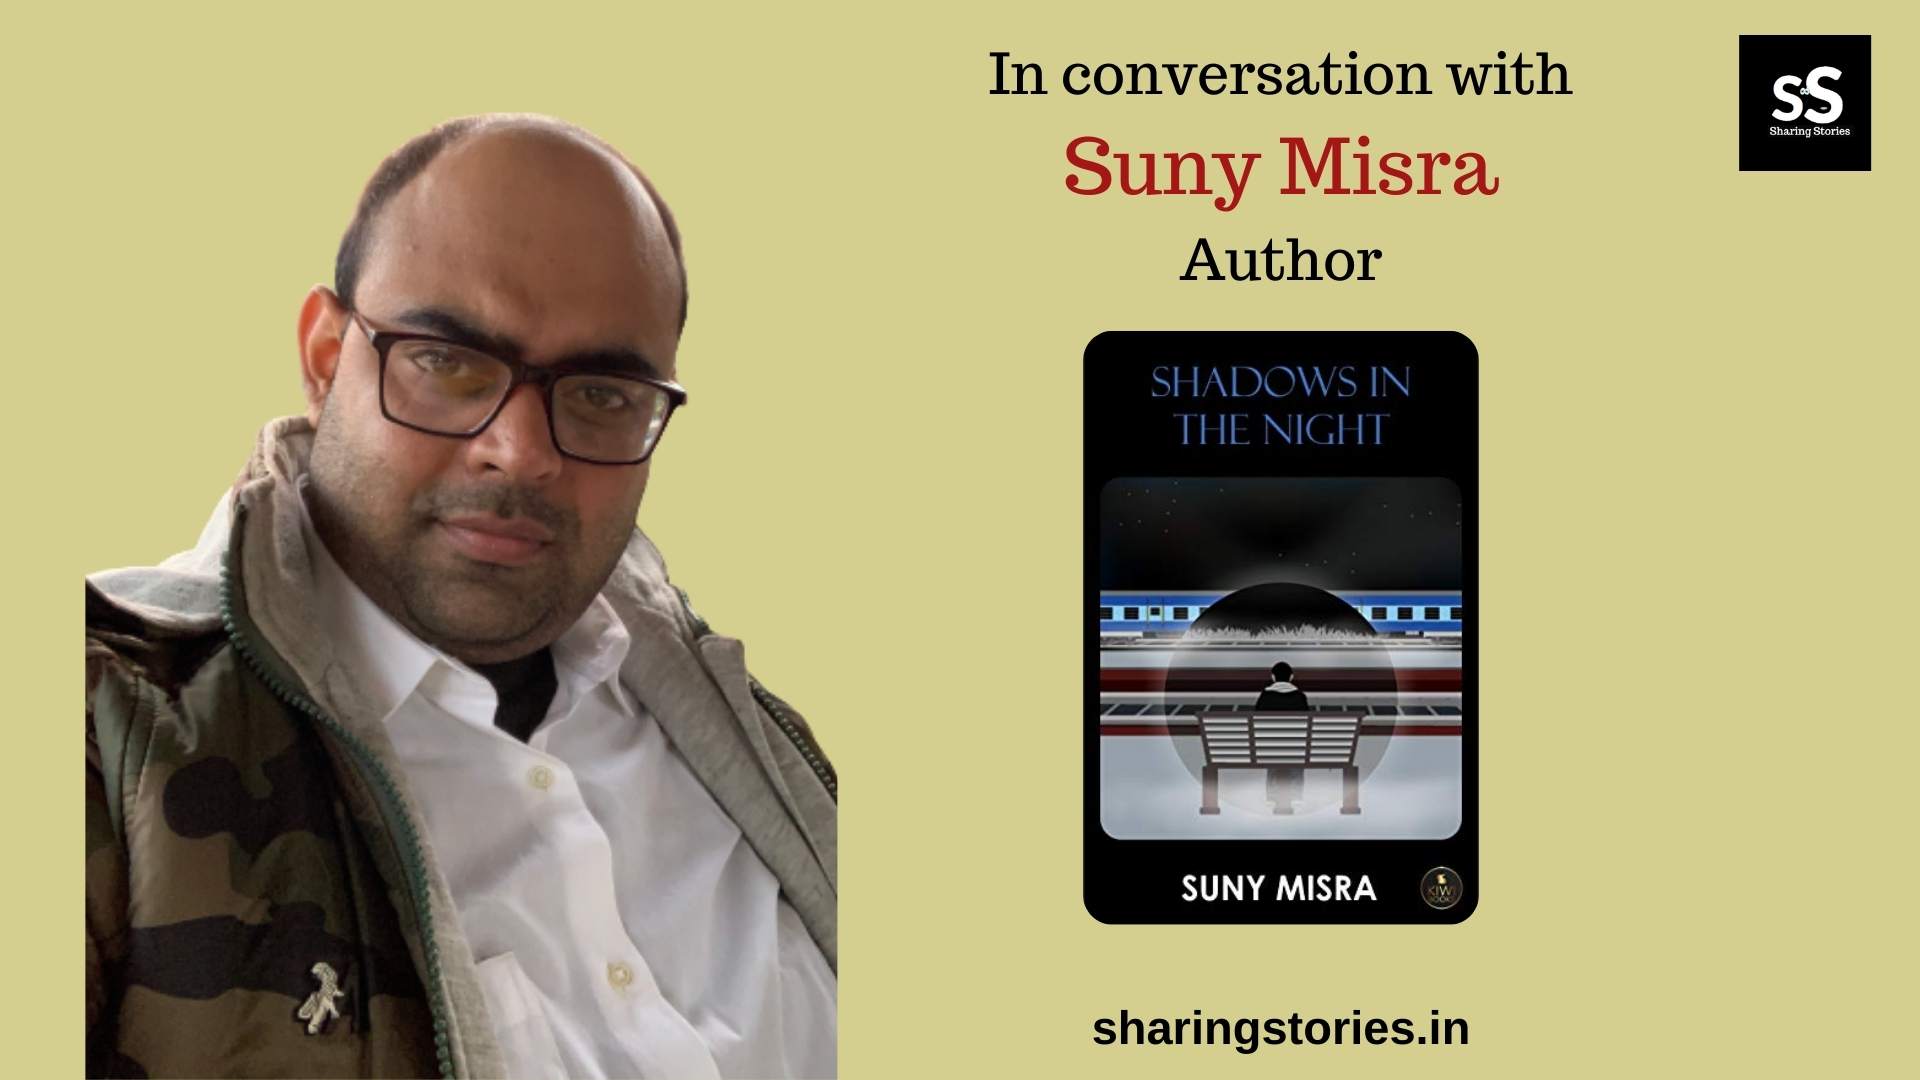 Author Suny Misra